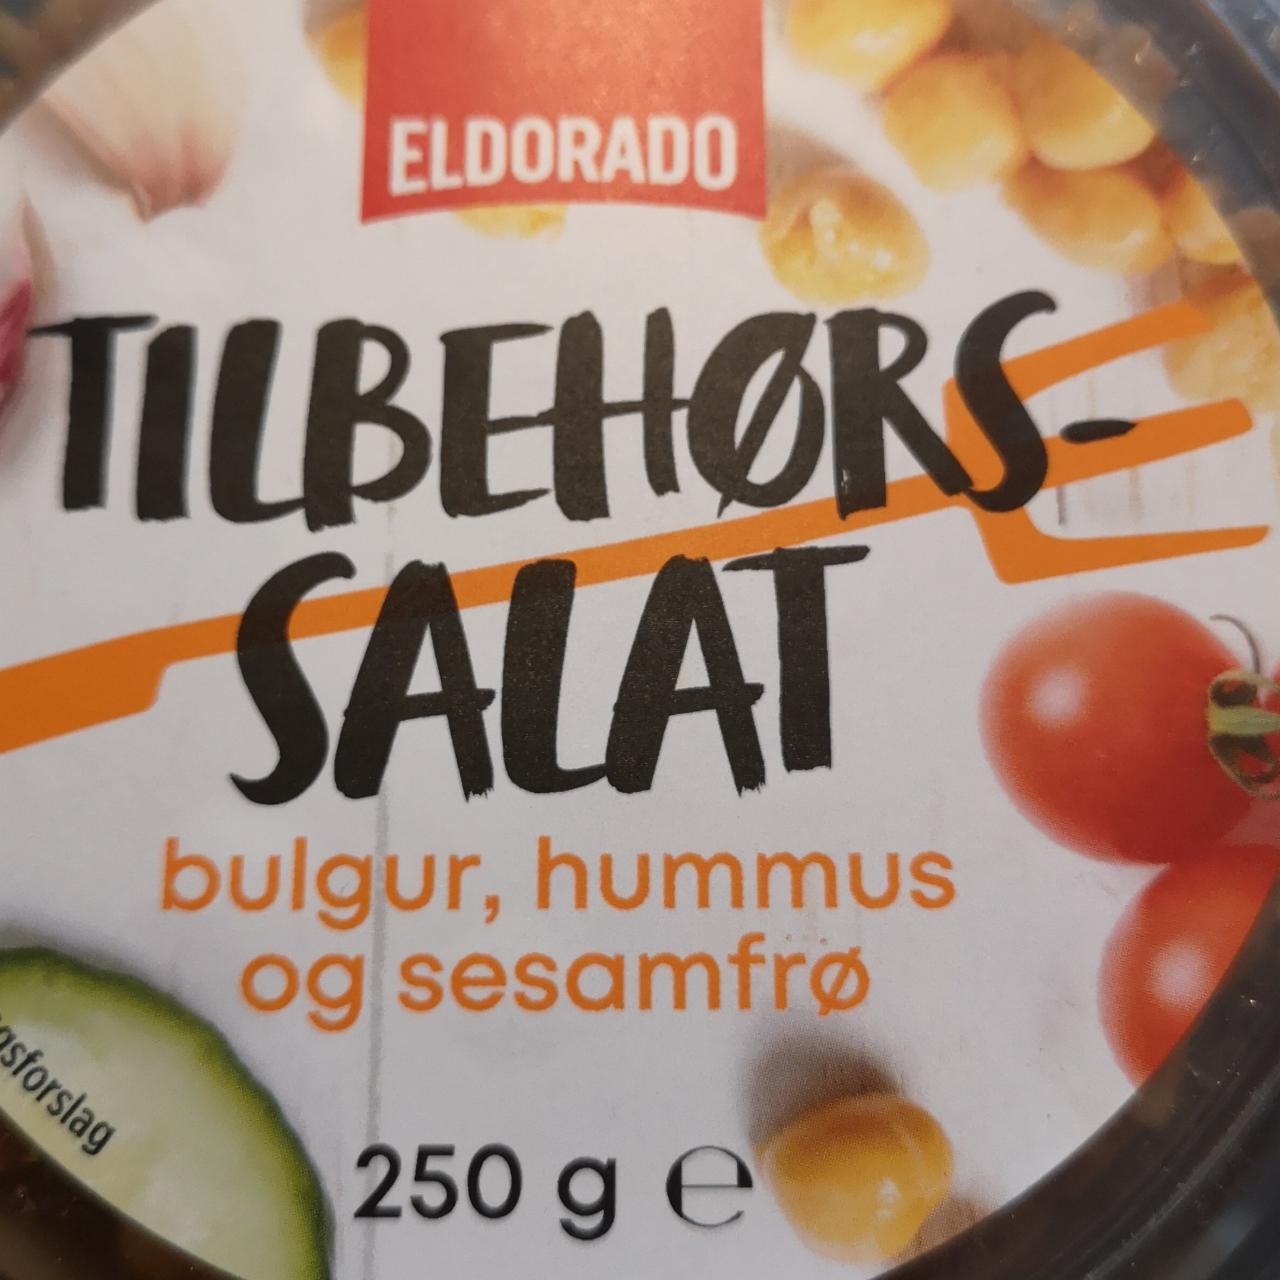 Fotografie - Tilbehørs salat Bulgur, Hummuss og sesamfrø Eldorado